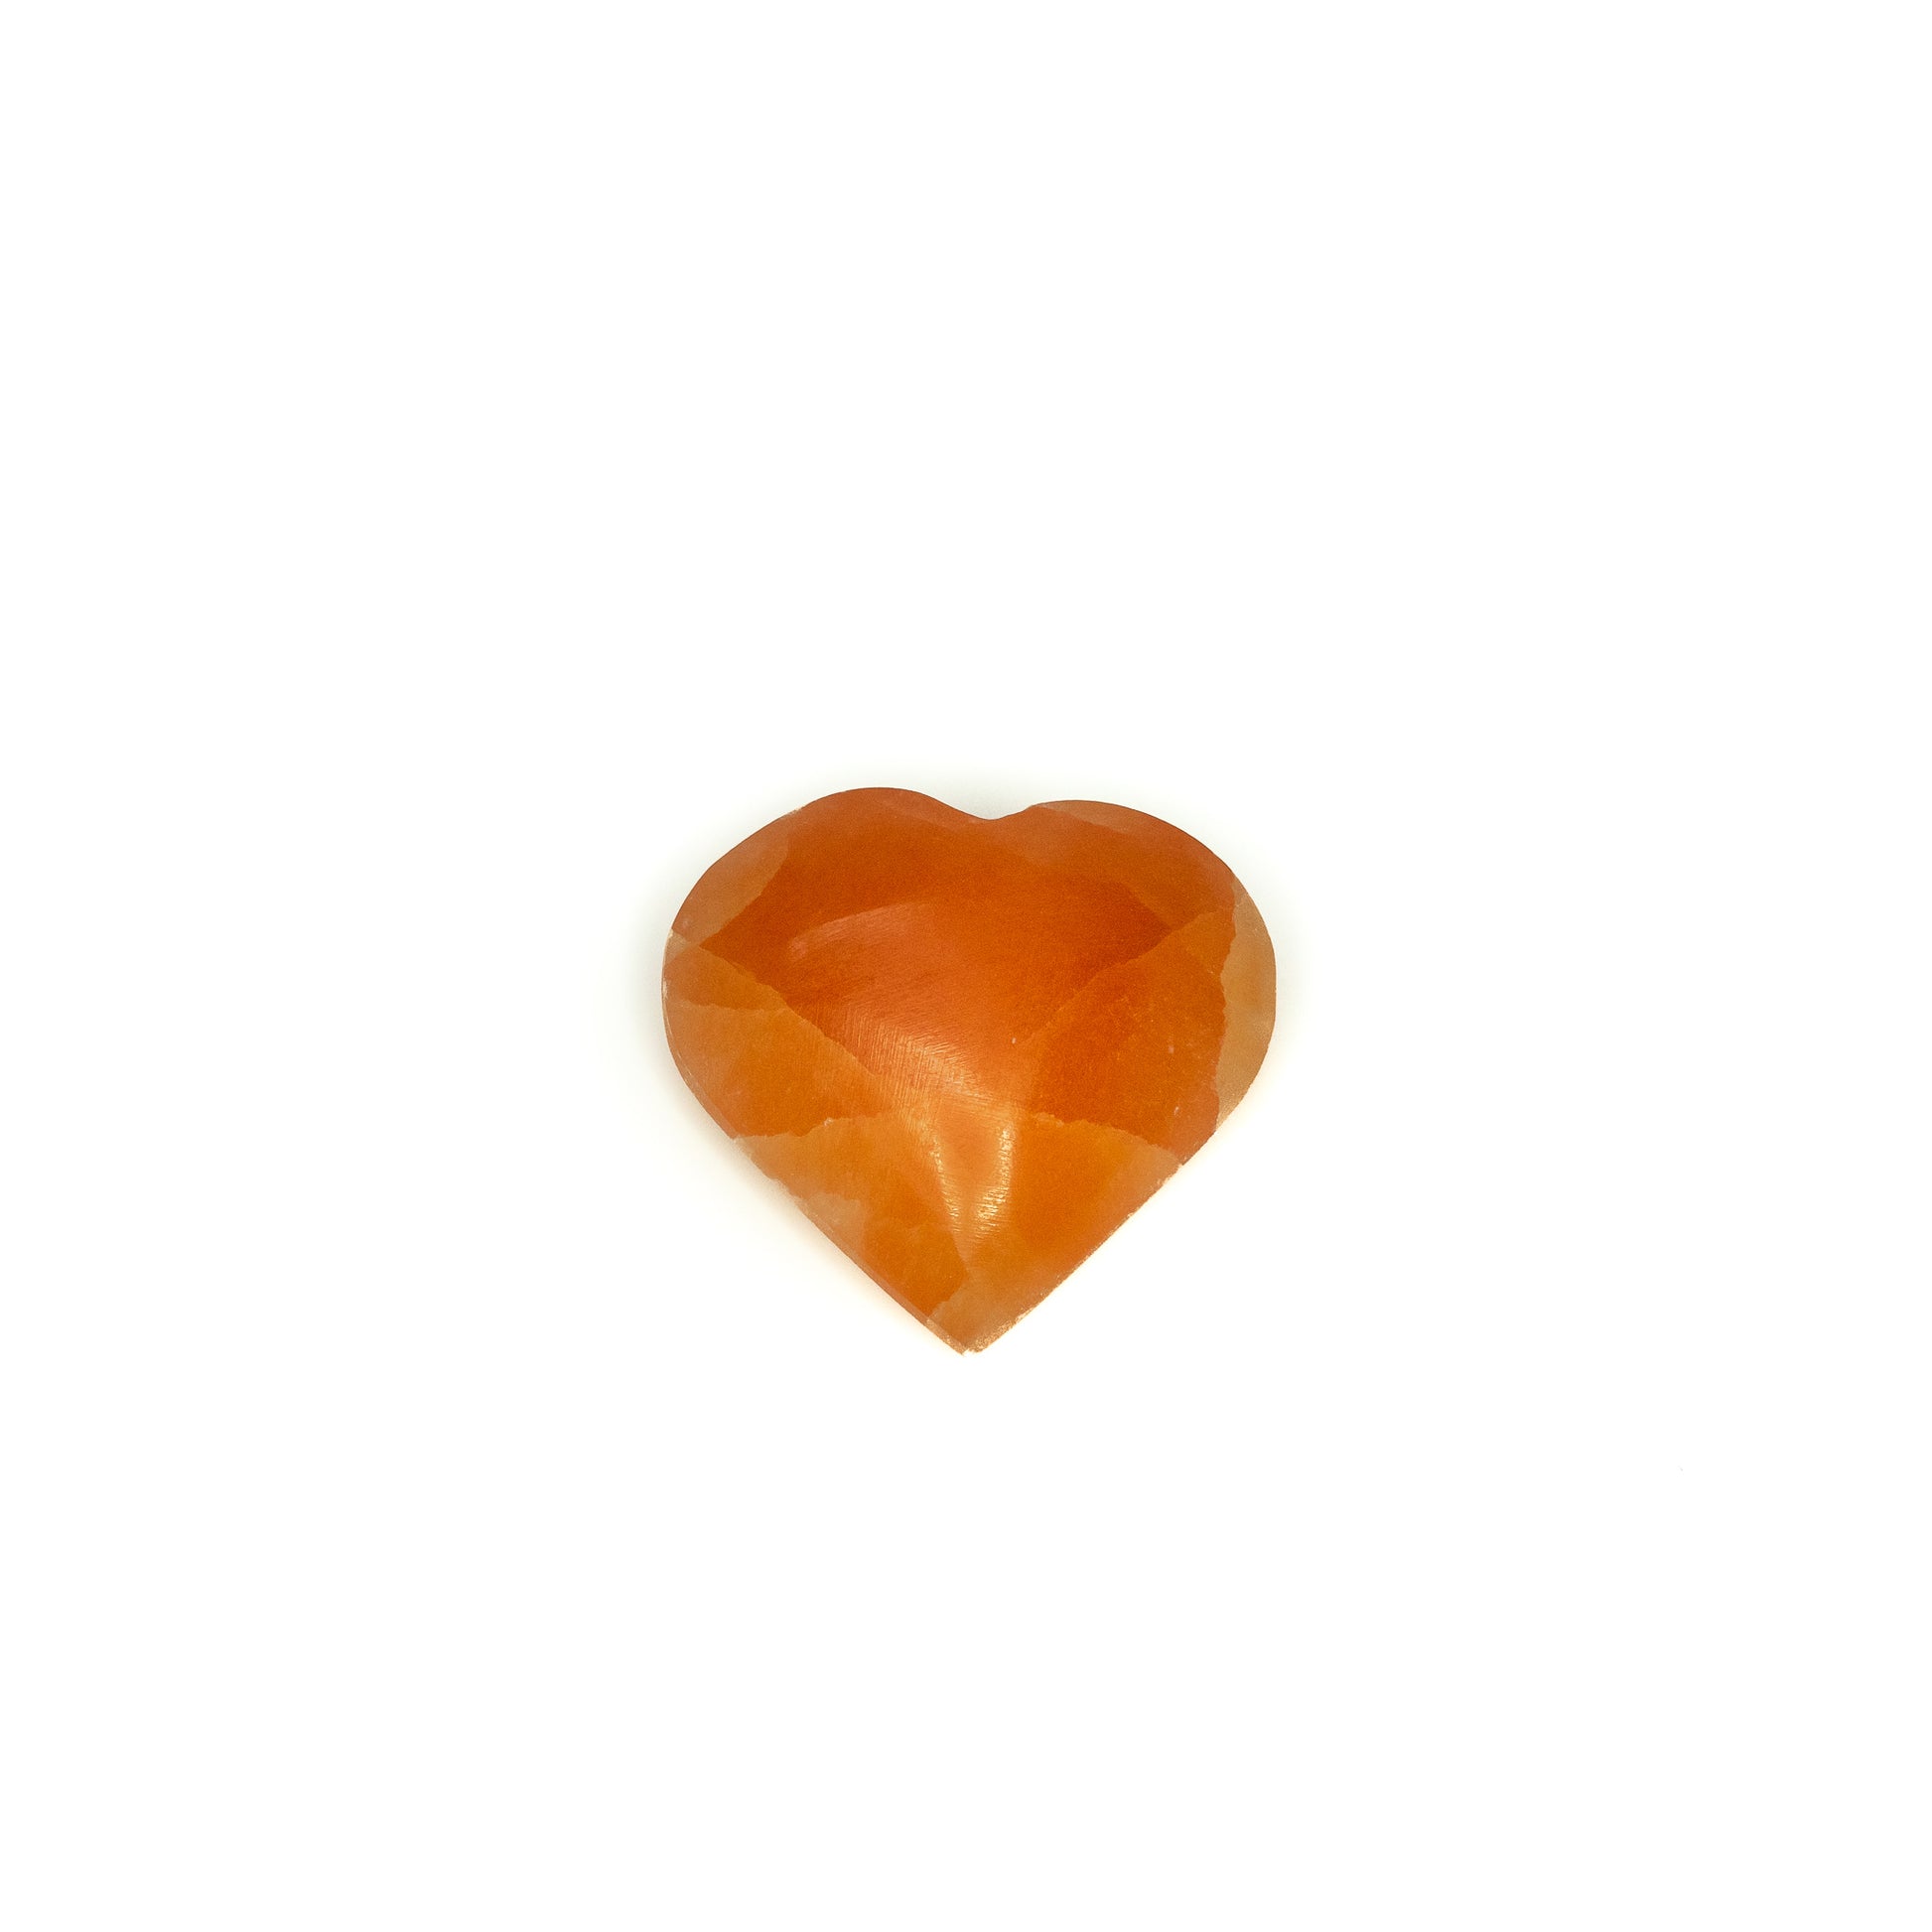 Selenite orange heart 5-6 cm - Case of 5